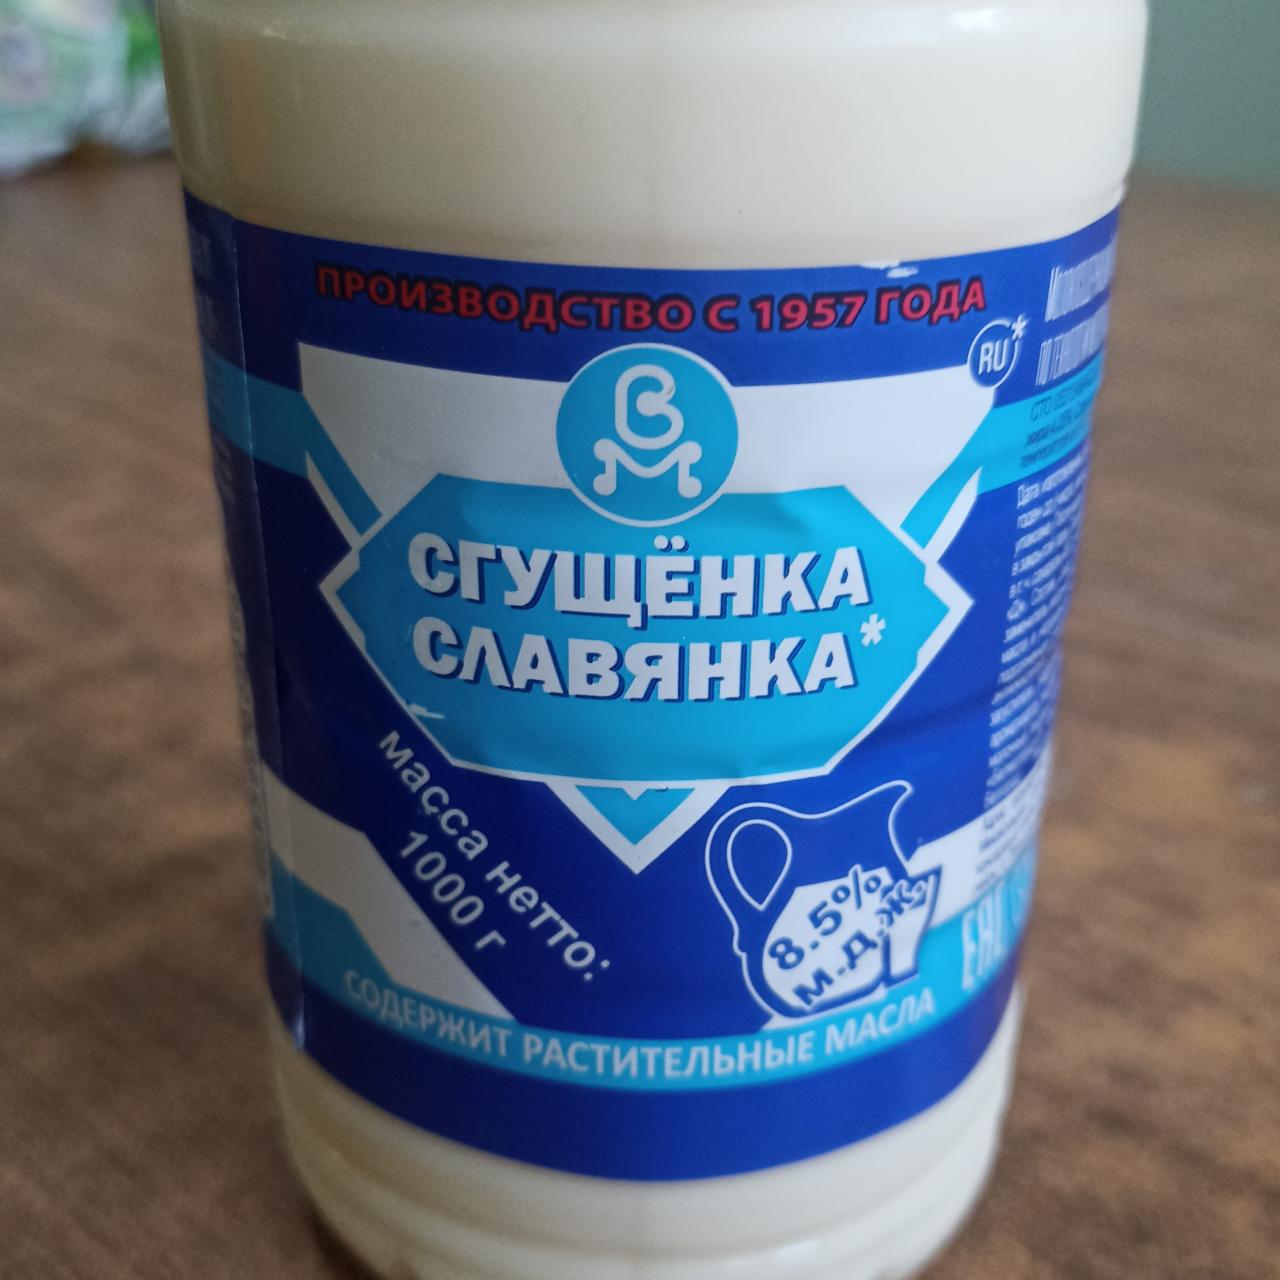 Фото - Сгущёнка Славянка с сахаром Белгородские молочные продукты